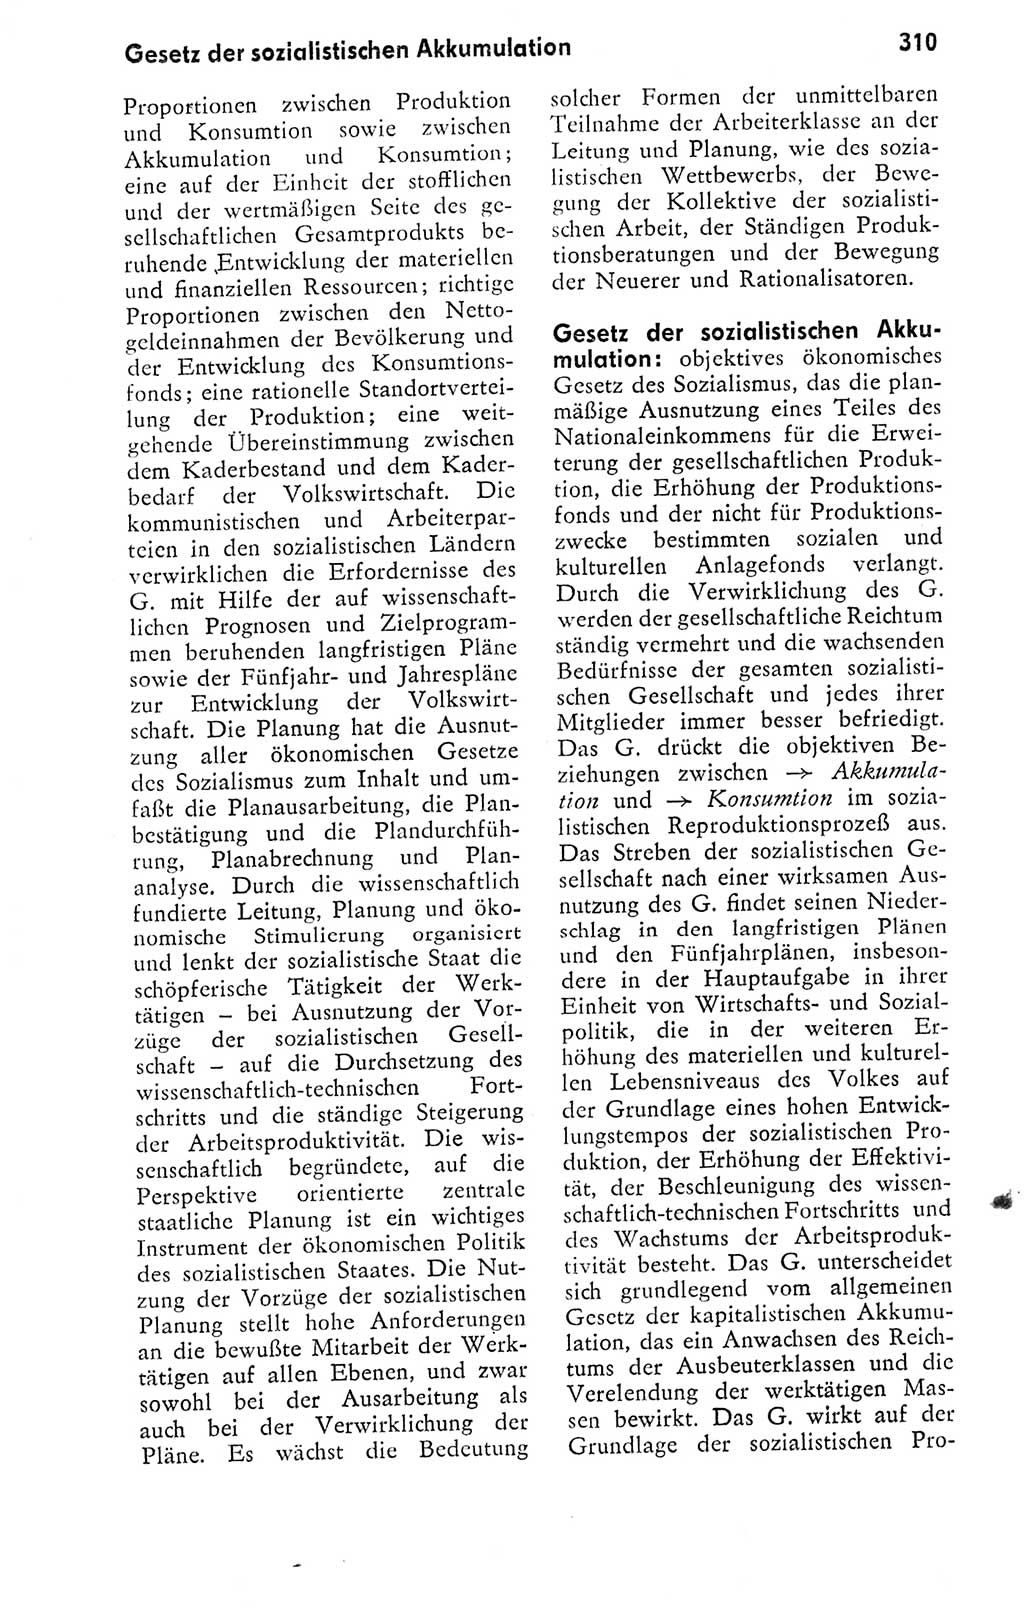 Kleines politisches Wörterbuch [Deutsche Demokratische Republik (DDR)] 1978, Seite 310 (Kl. pol. Wb. DDR 1978, S. 310)